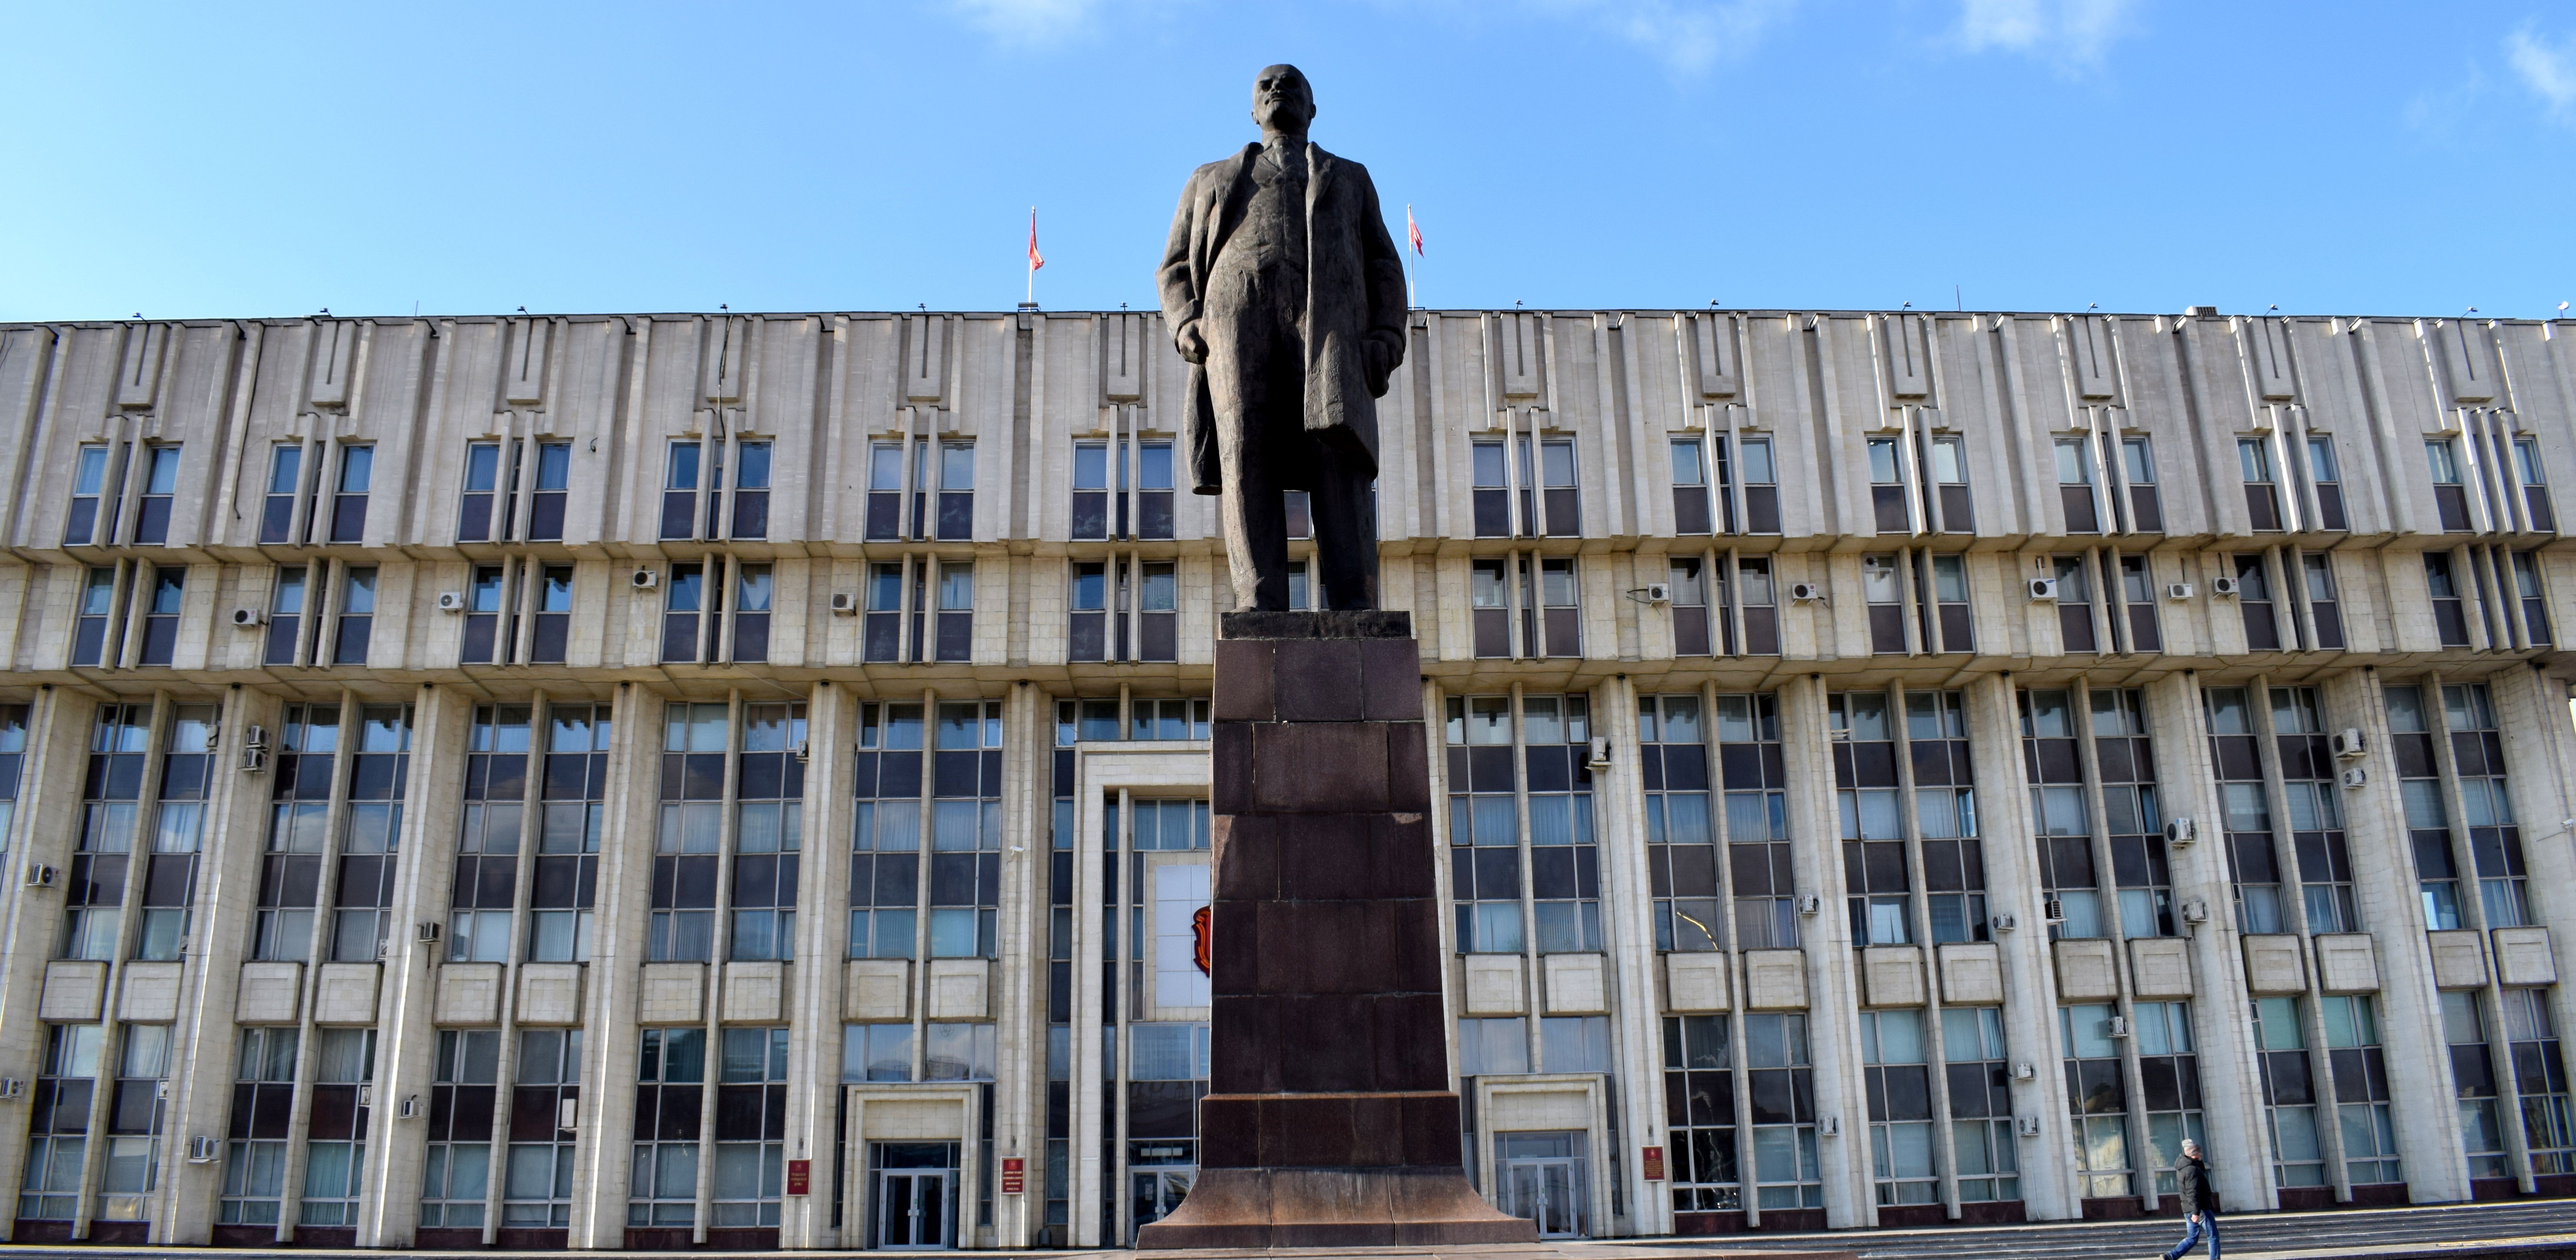 Lenin Statue in Tula, Russia